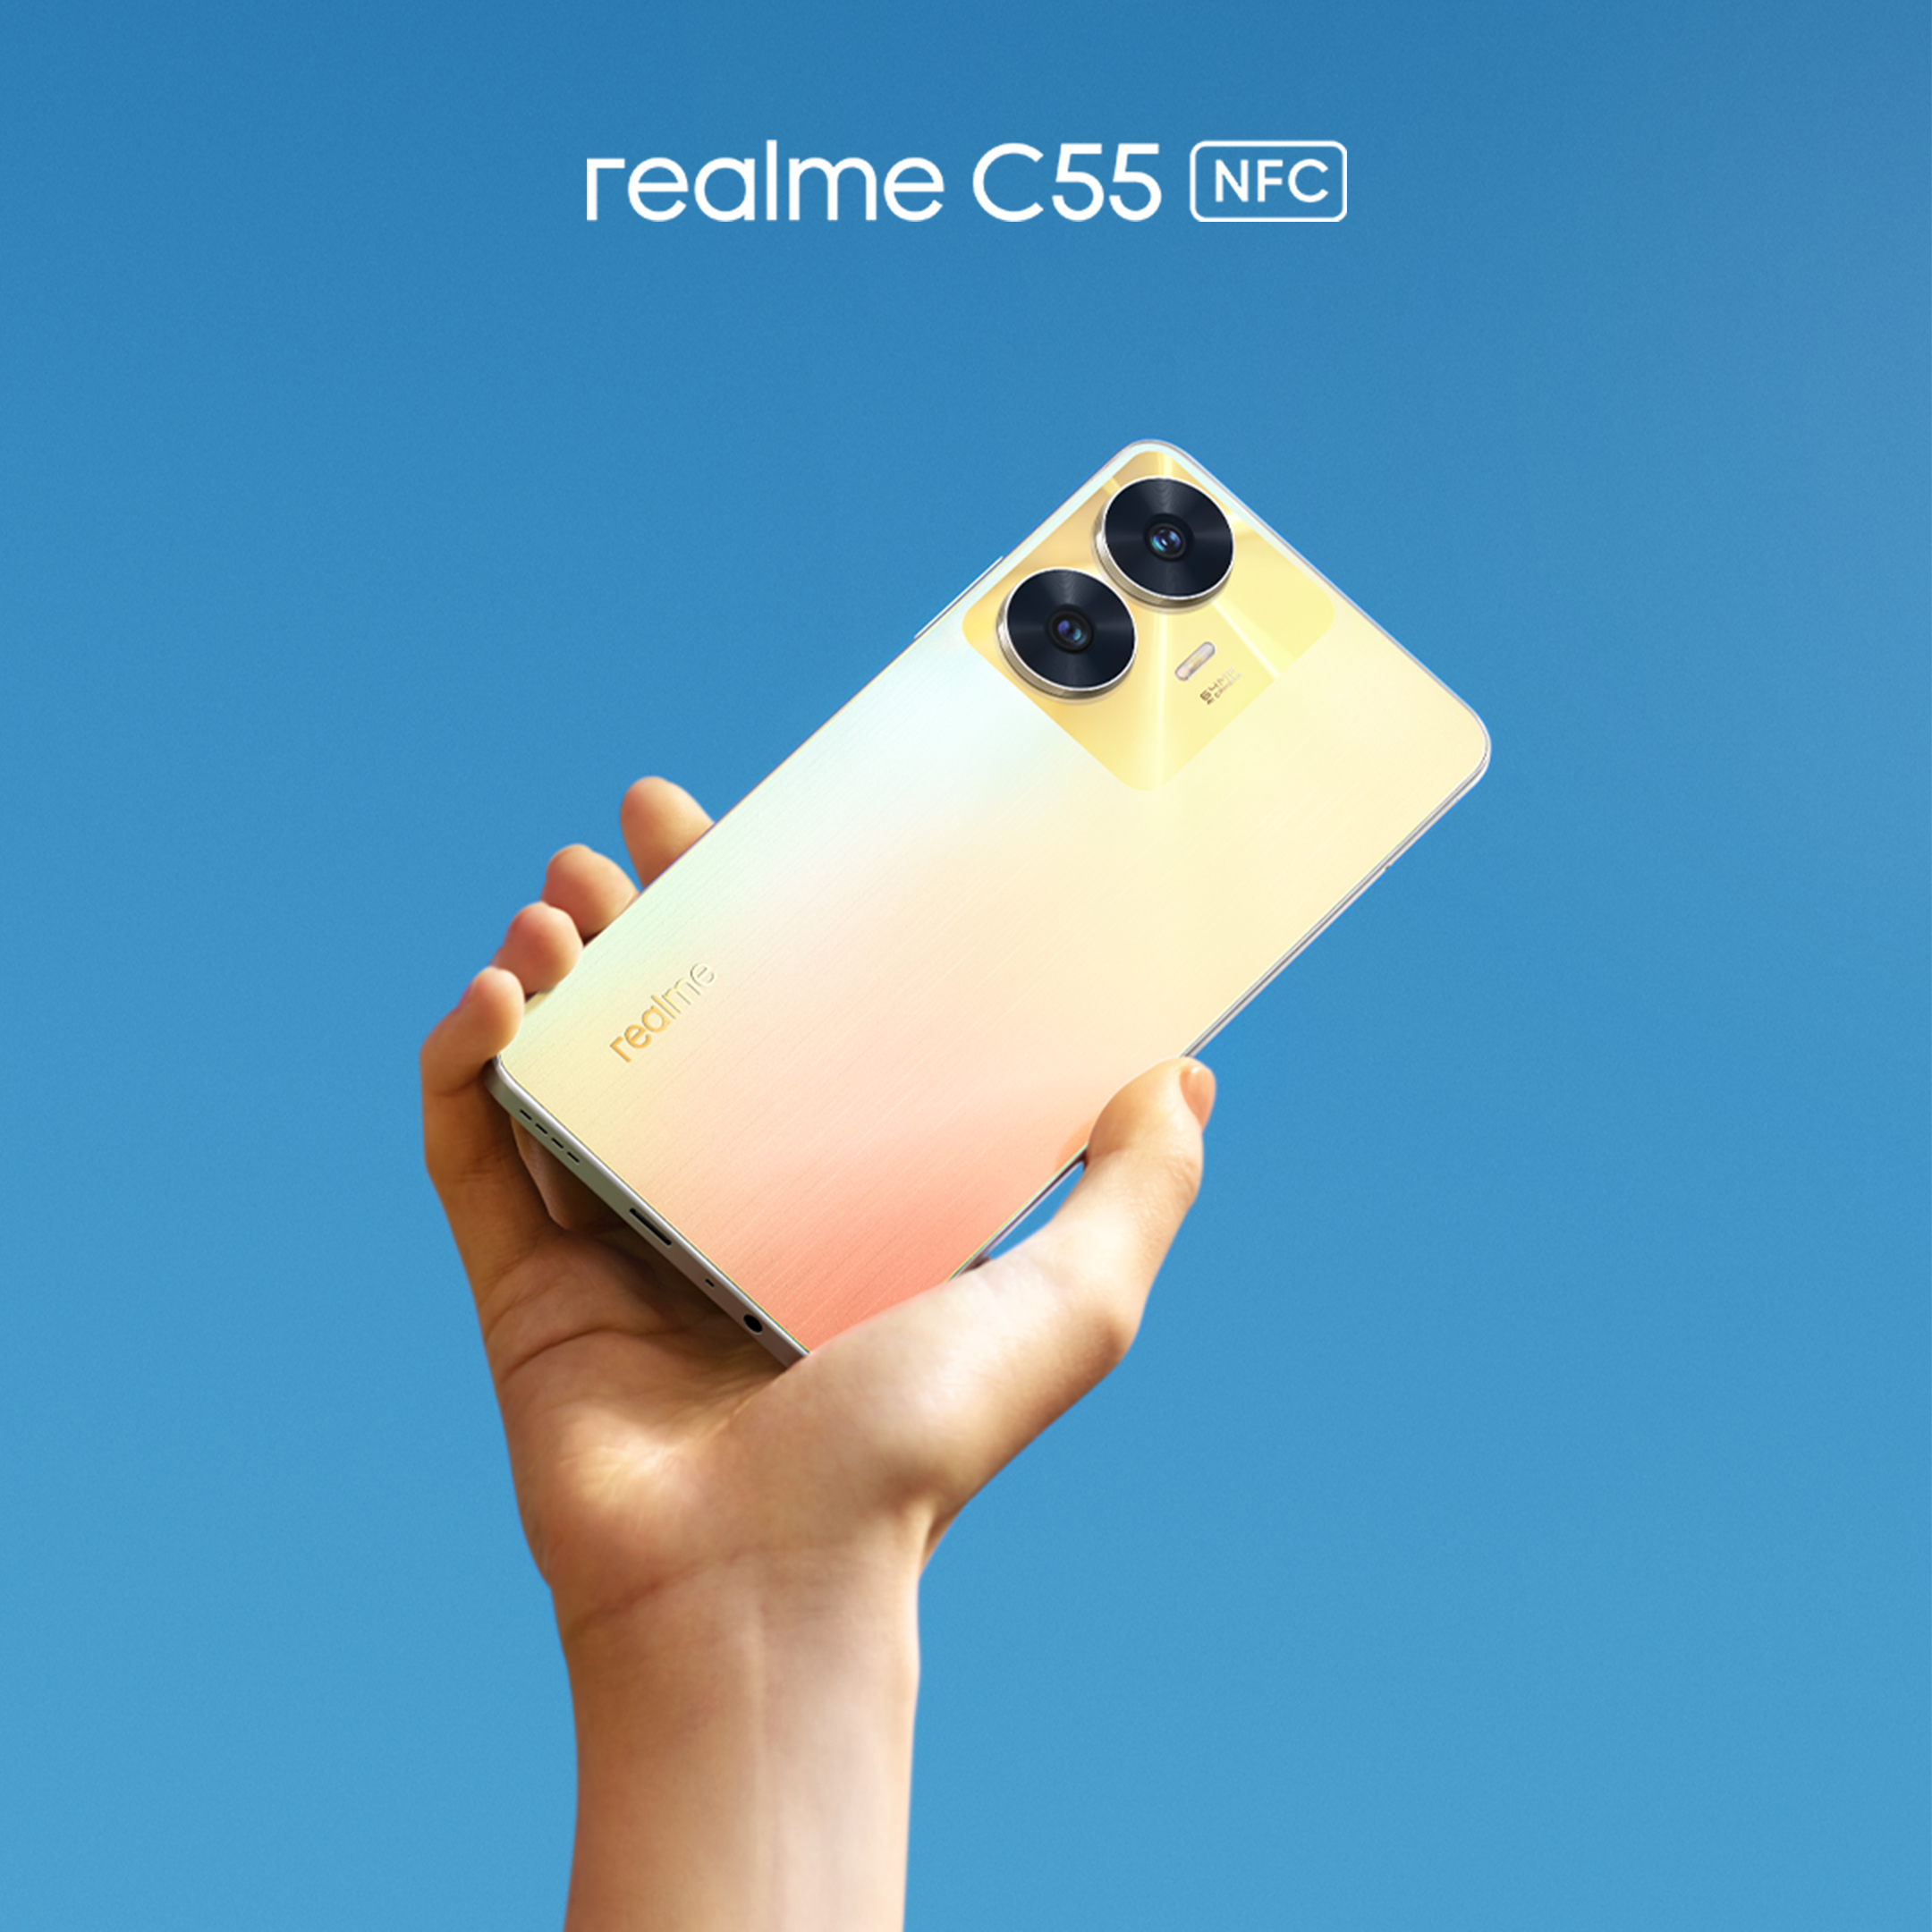 Bedah Spesifikasi Realme C55 NFC di Indonesia, Terdapat Fitur Kamera Selfie Mirip iPhone 14, Gokil!